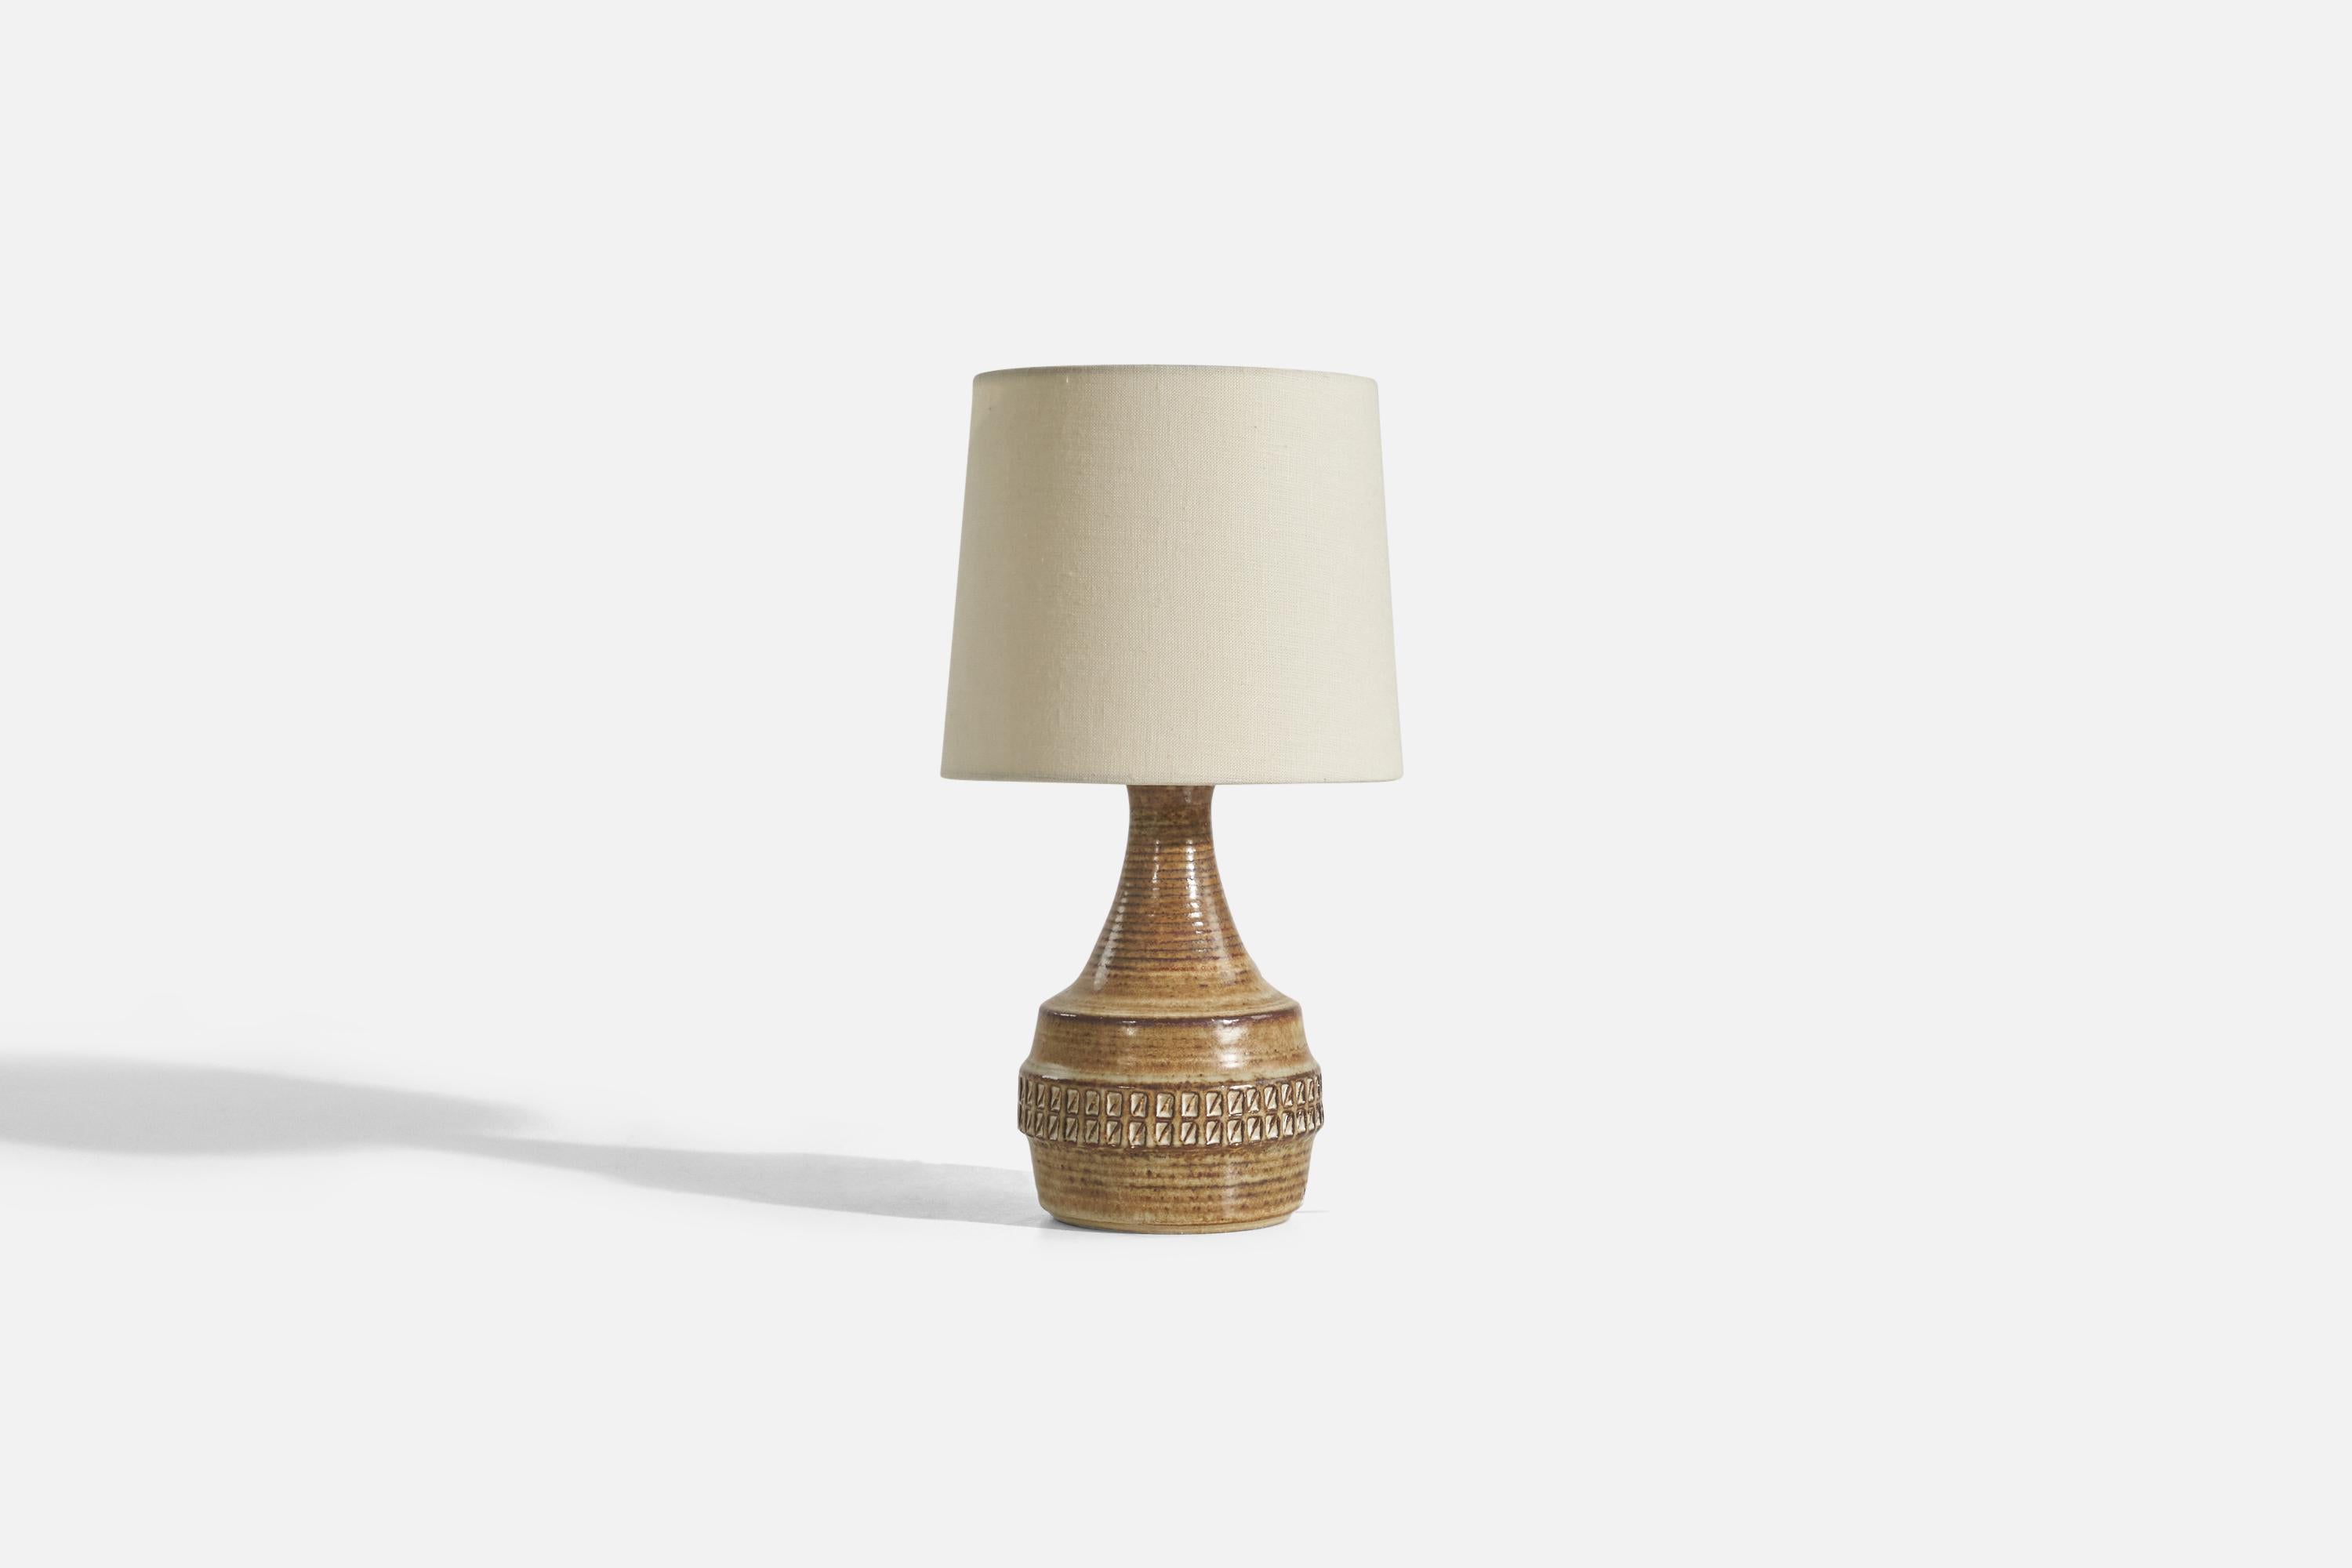 Lampe de table en grès émaillé brun clair, conçue par Joseph Simon et produite par Søholm Keramik, Bornholm, Danemark, années 1960. 

Vendu sans abat-jour.
Dimensions de la lampe (pouces) : 10.5 x 5.37 x 5.37 (Hauteur x Largeur x